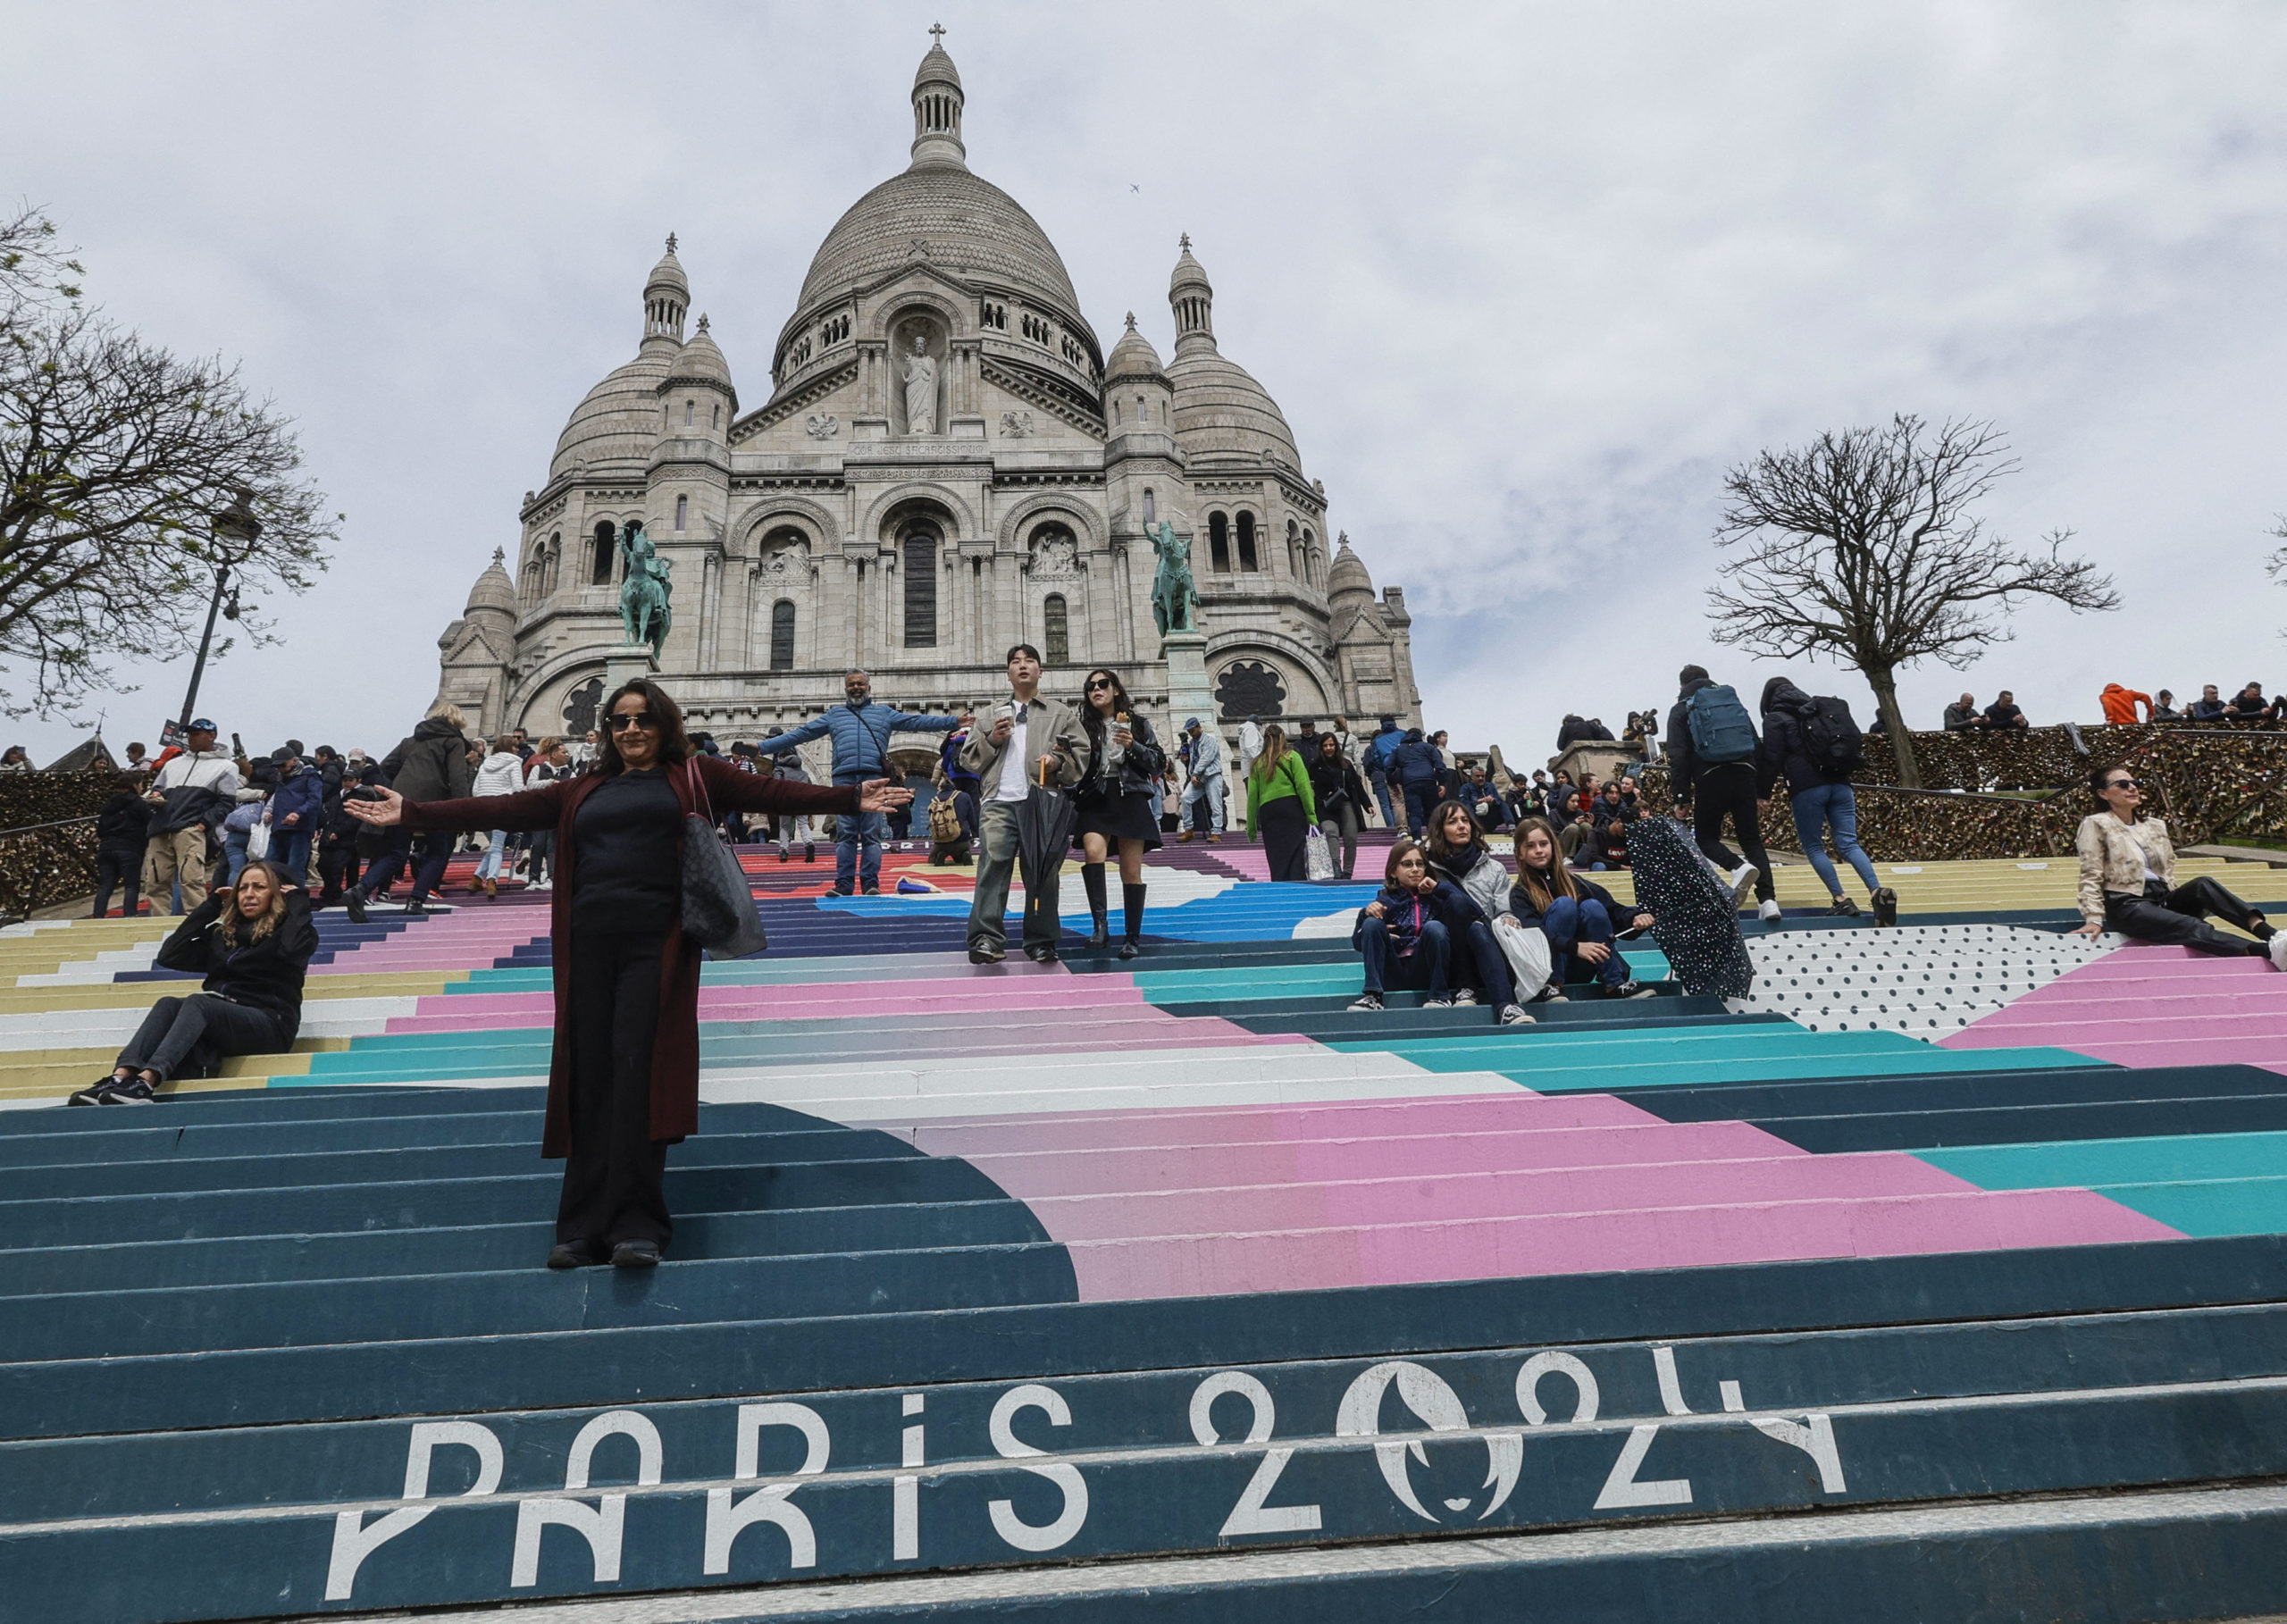 La gente baja las escaleras pintadas con los colores de los próximos Juegos Olímpicos de París 2024 frente a la Basílica del Sacre Coeur.